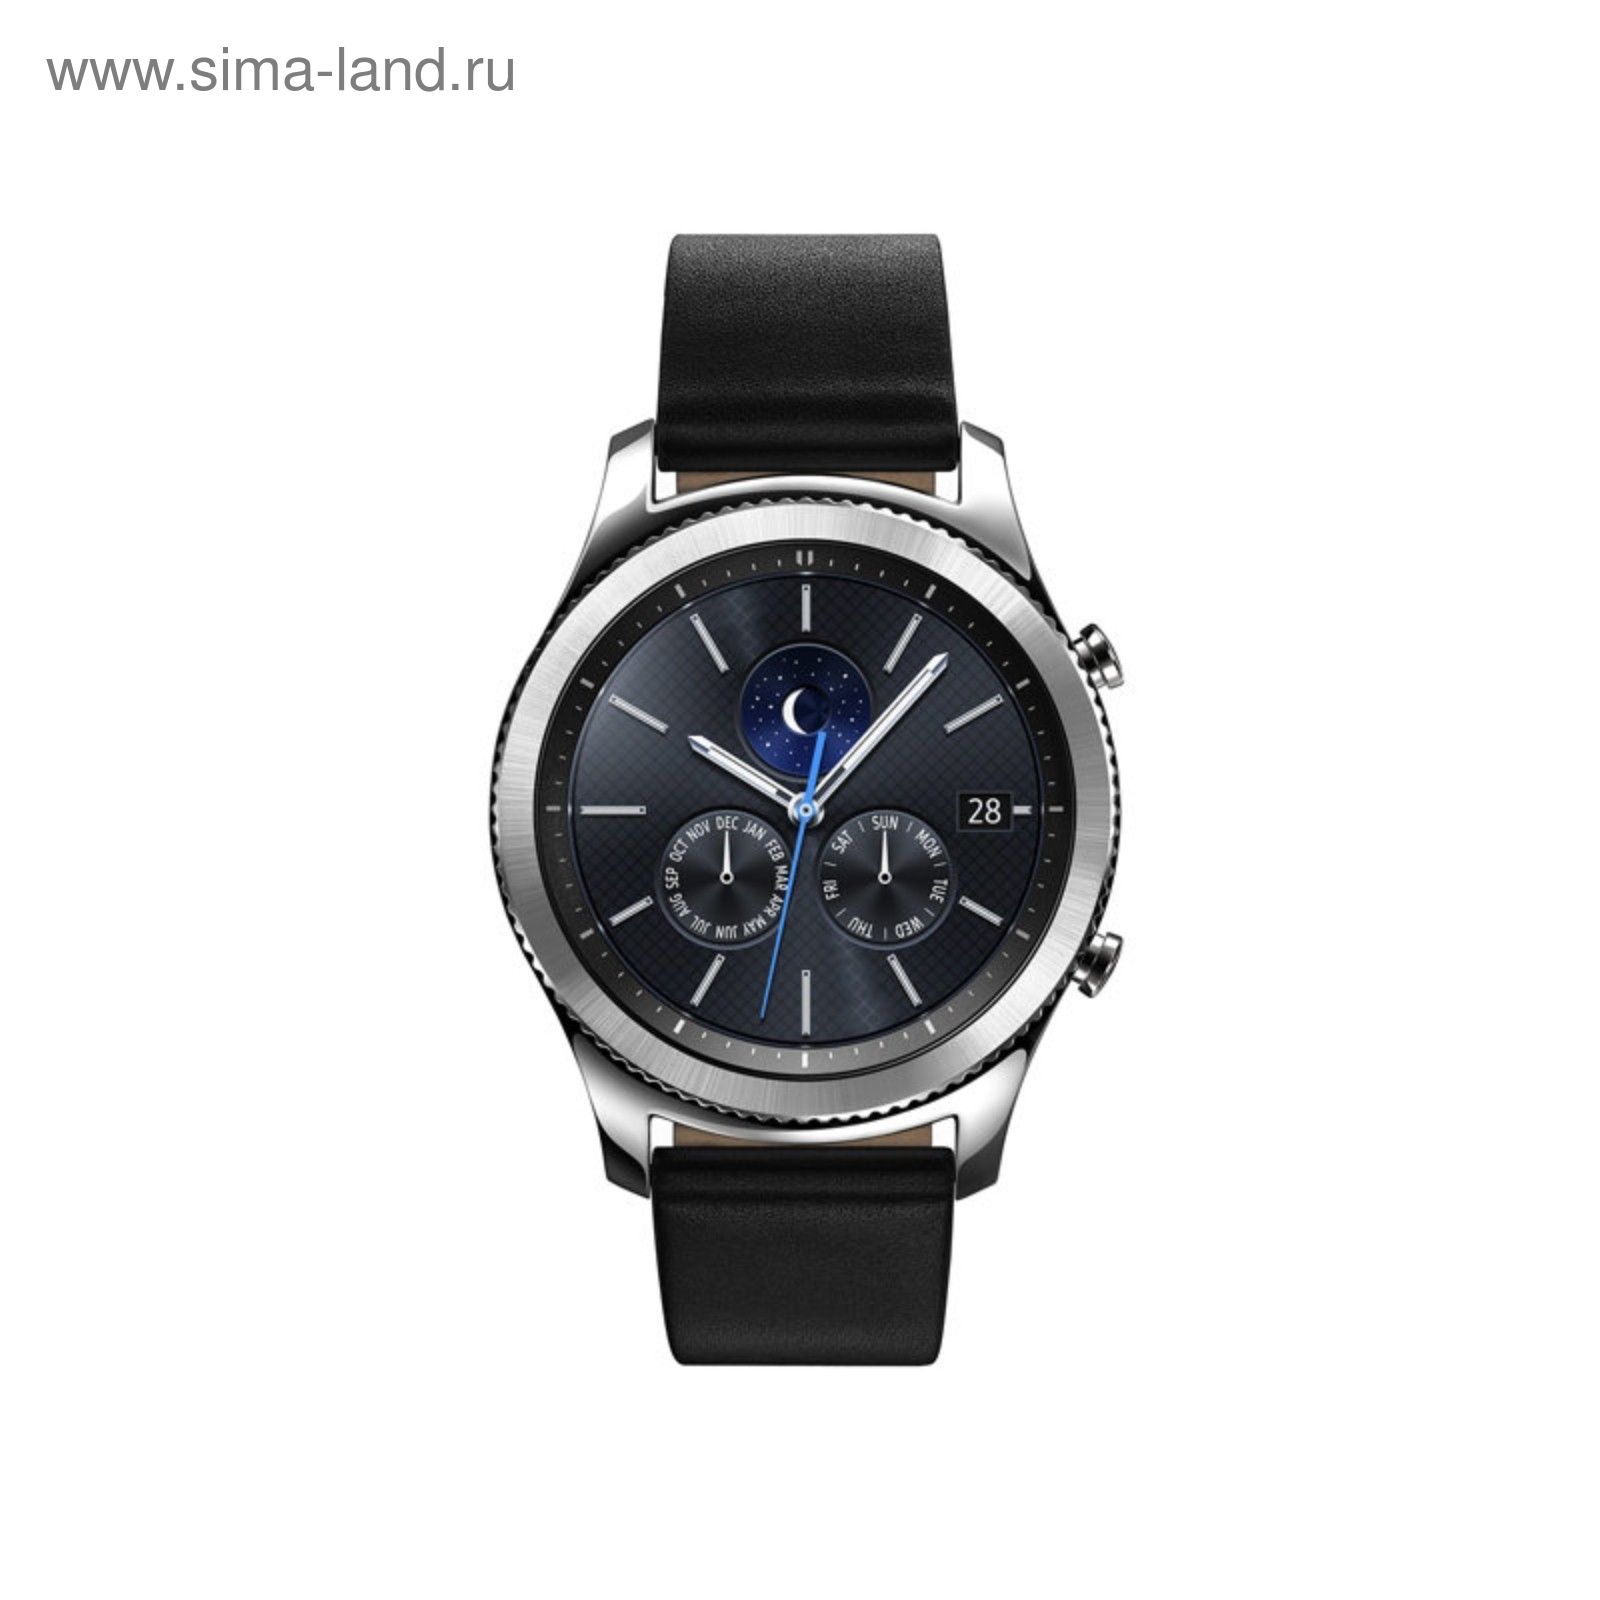 Смарт-часы Samsung Galaxy Gear S3 classic SM-R770 серебристый